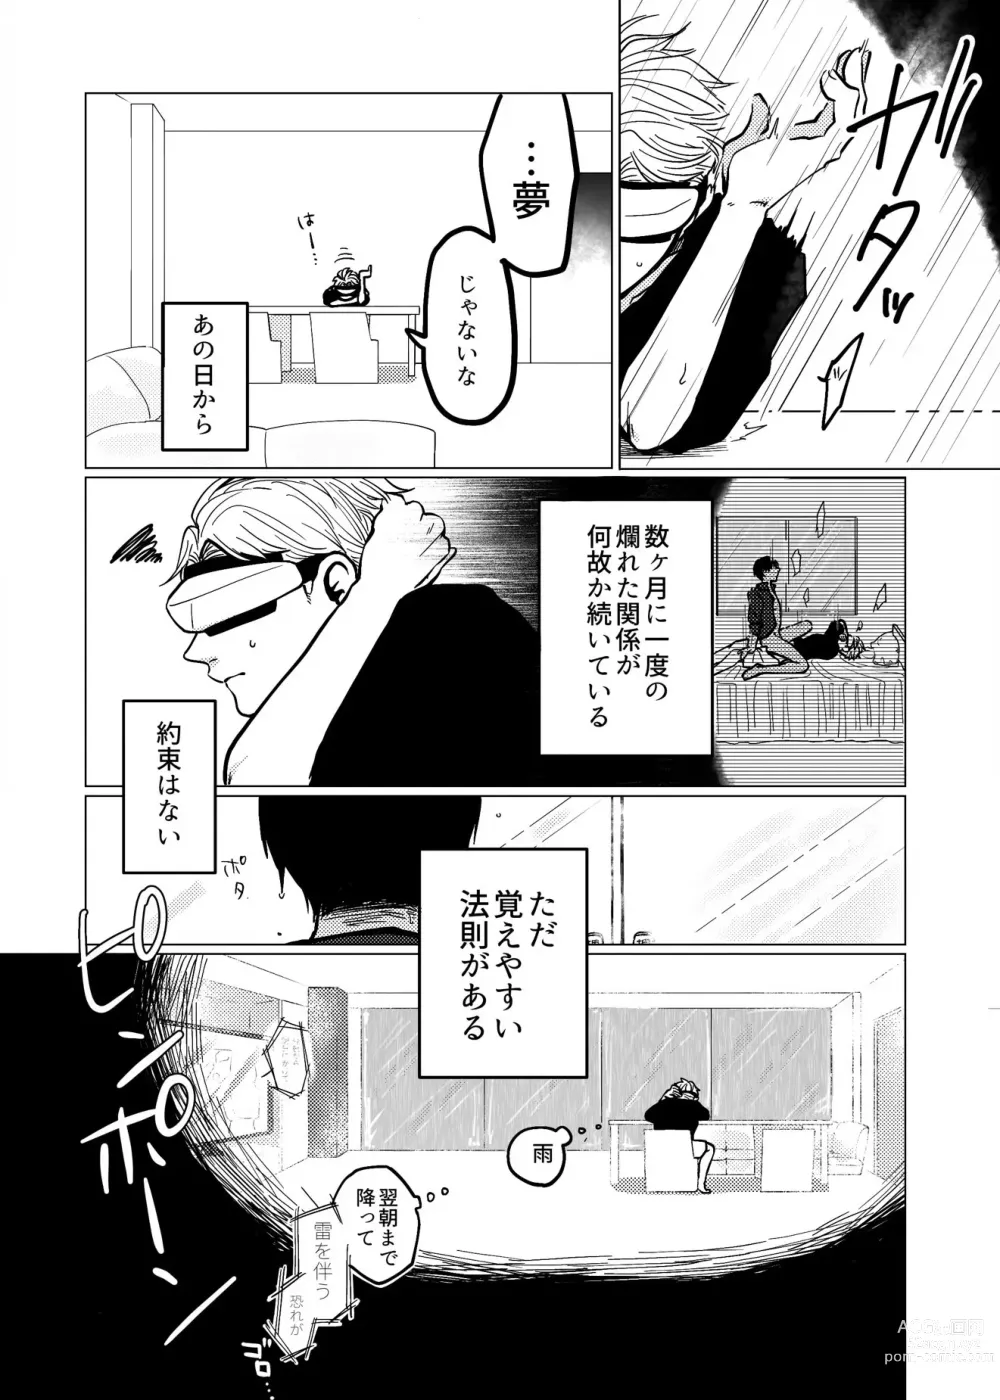 Page 6 of doujinshi Koroshite Kurete Kamawanai kara Ano Basho ni Kaesanai de